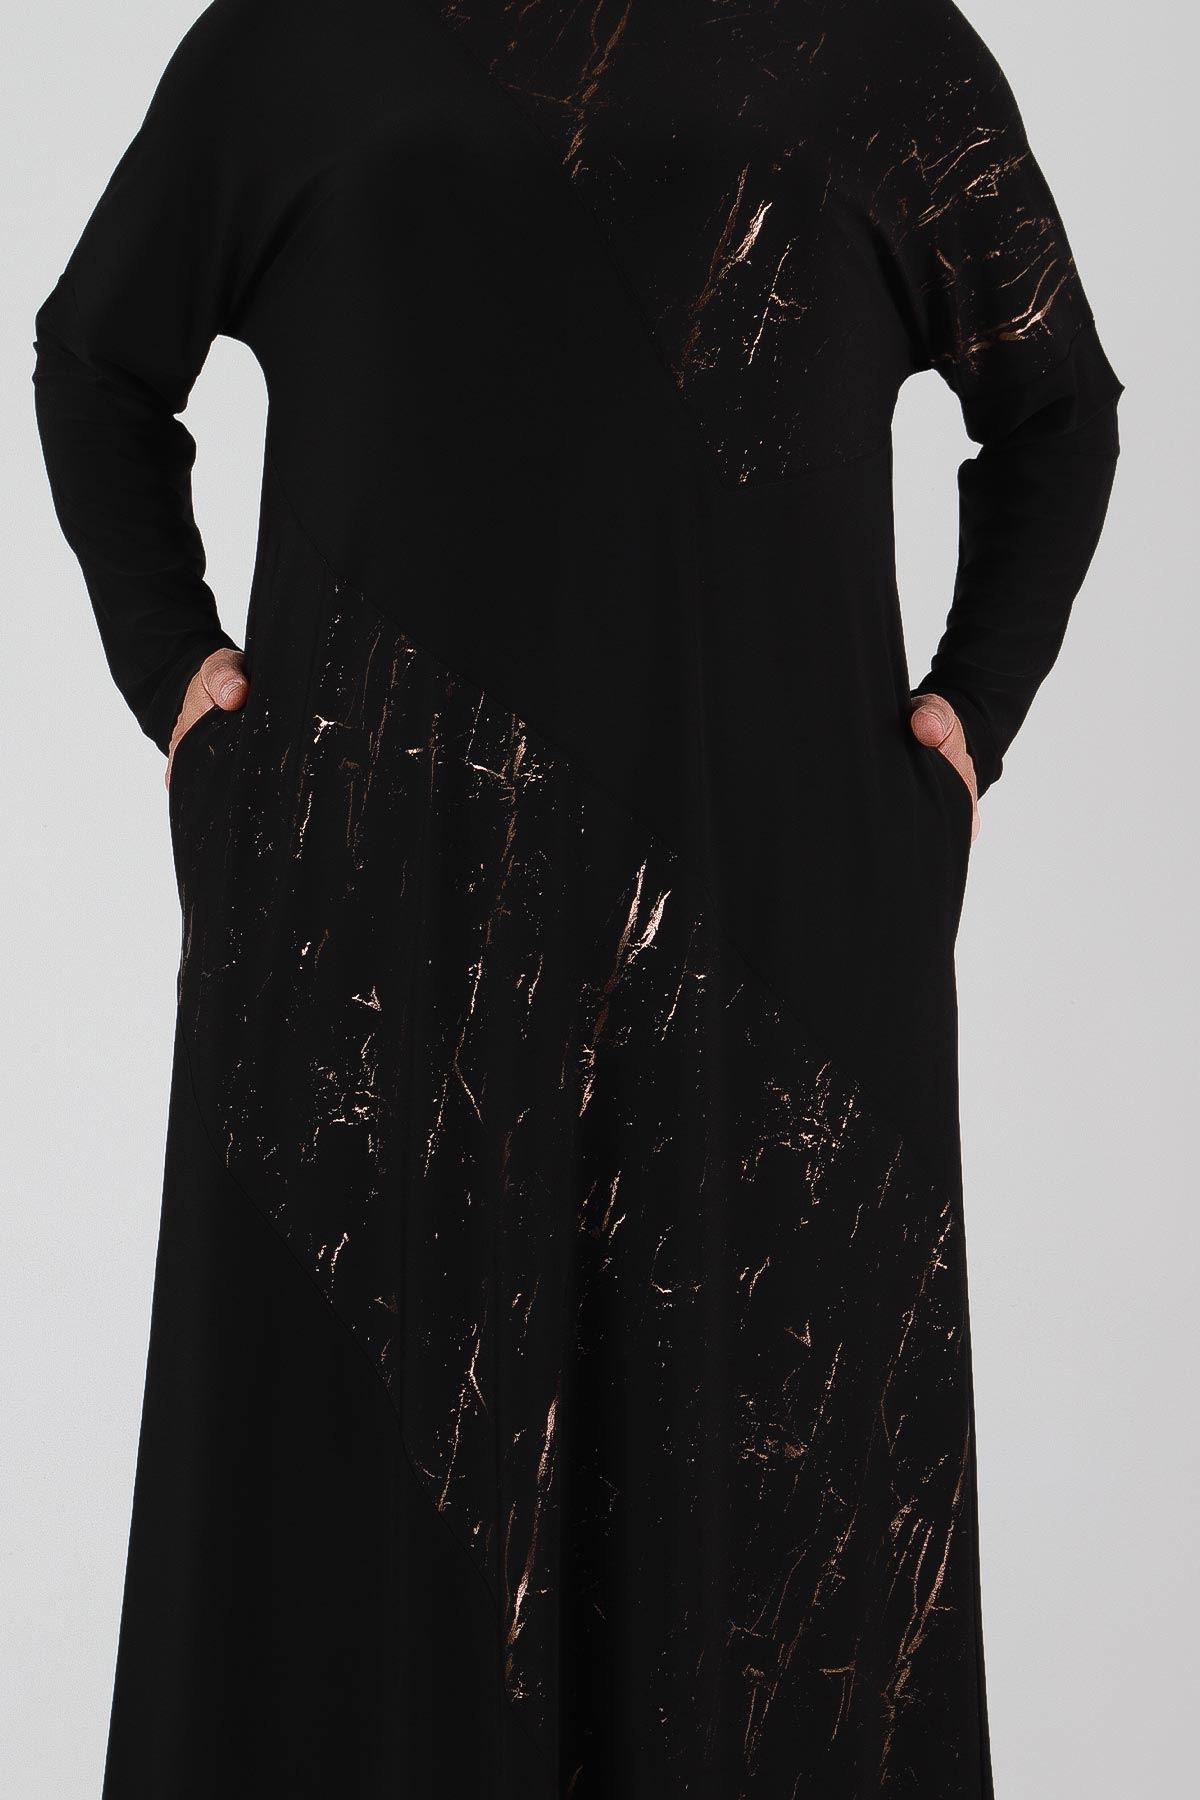 Büyük Beden Tesettür Elbise 7506 Siyah